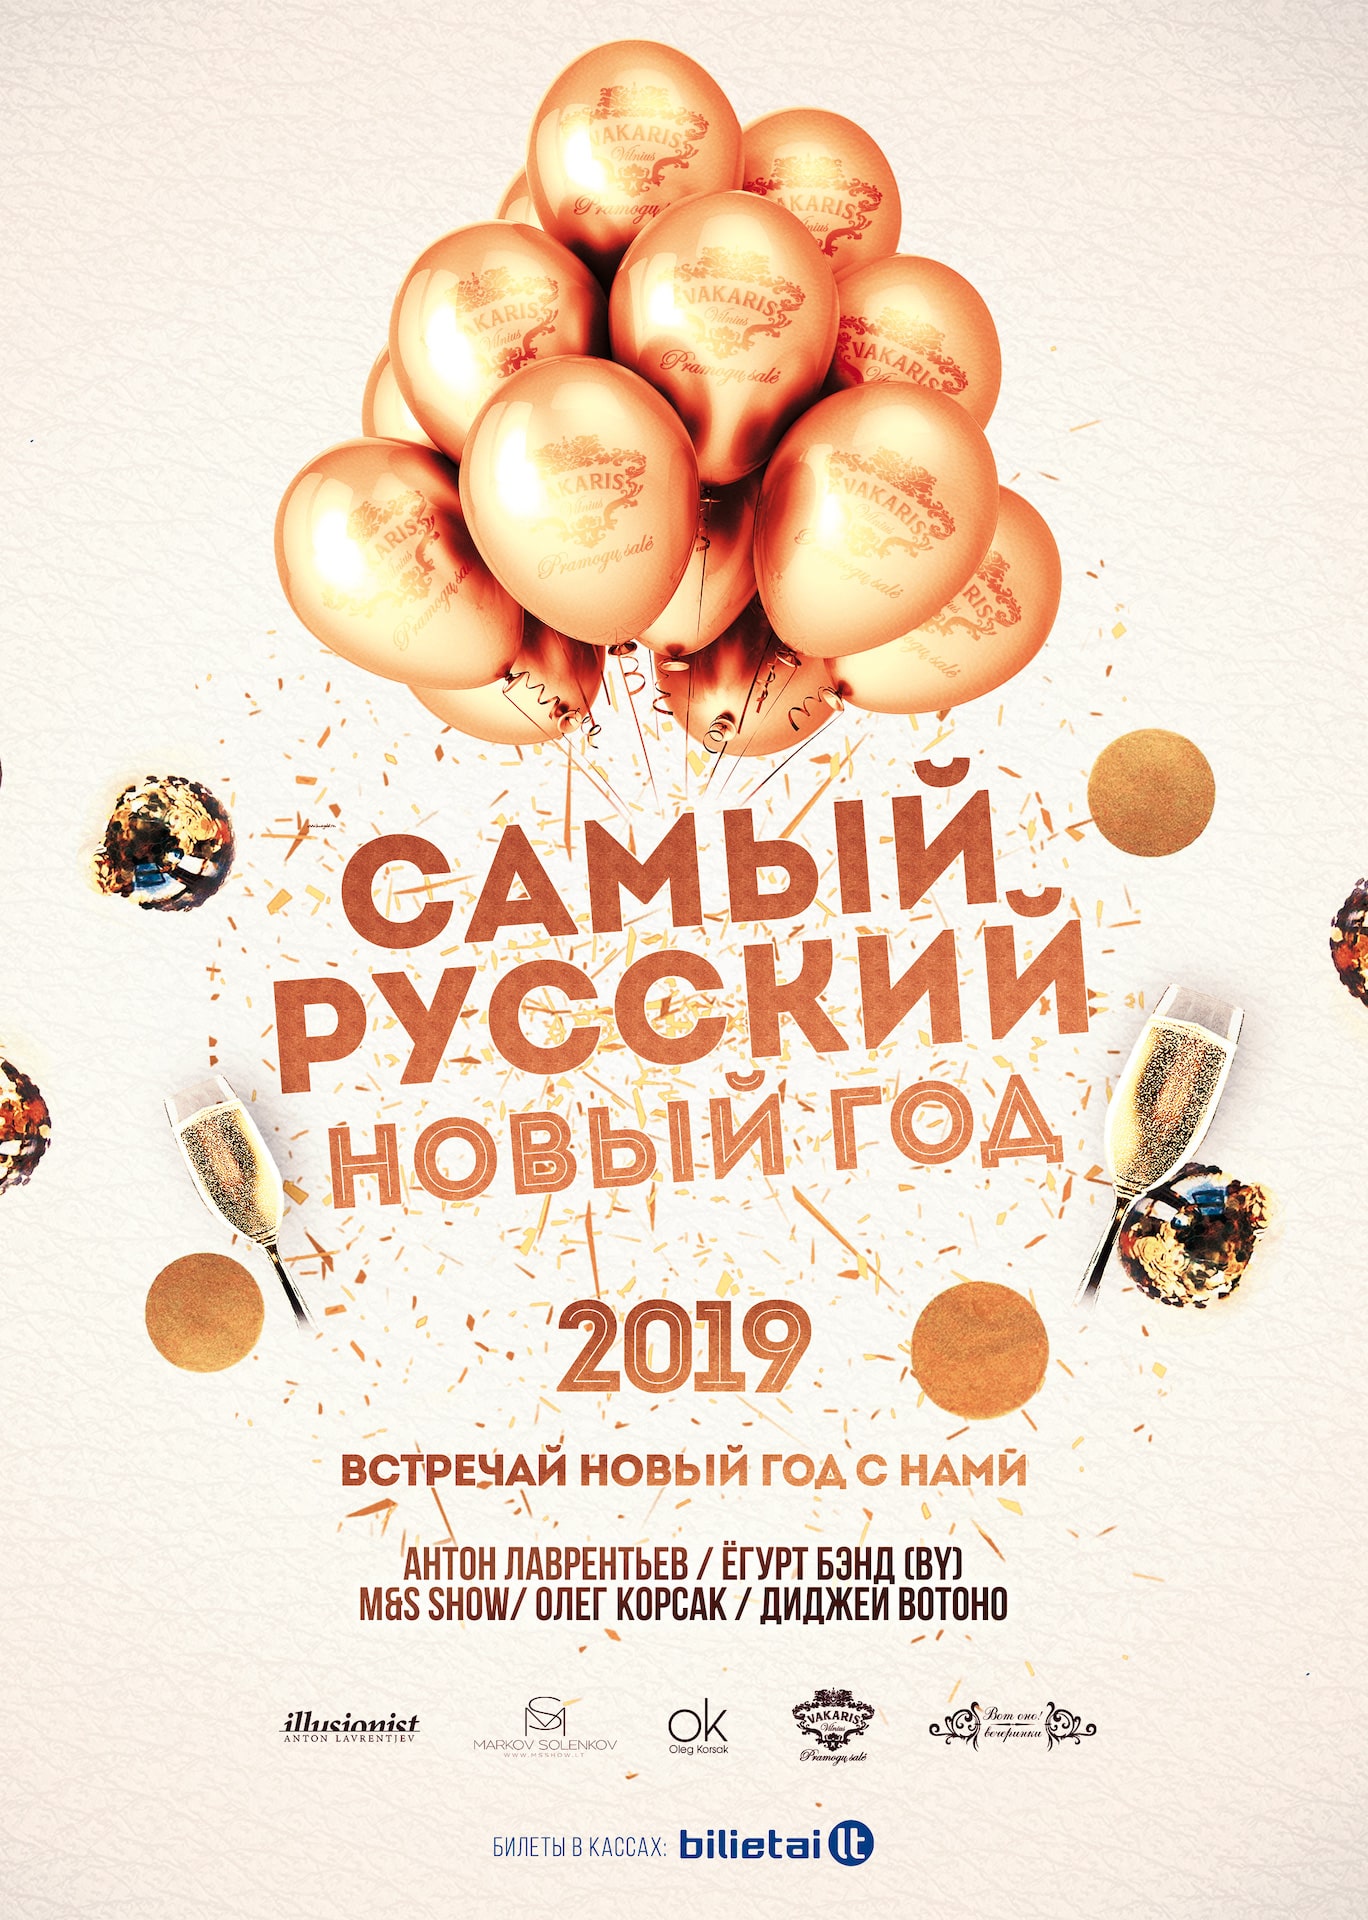 Самый Русский Новый Год 2019!